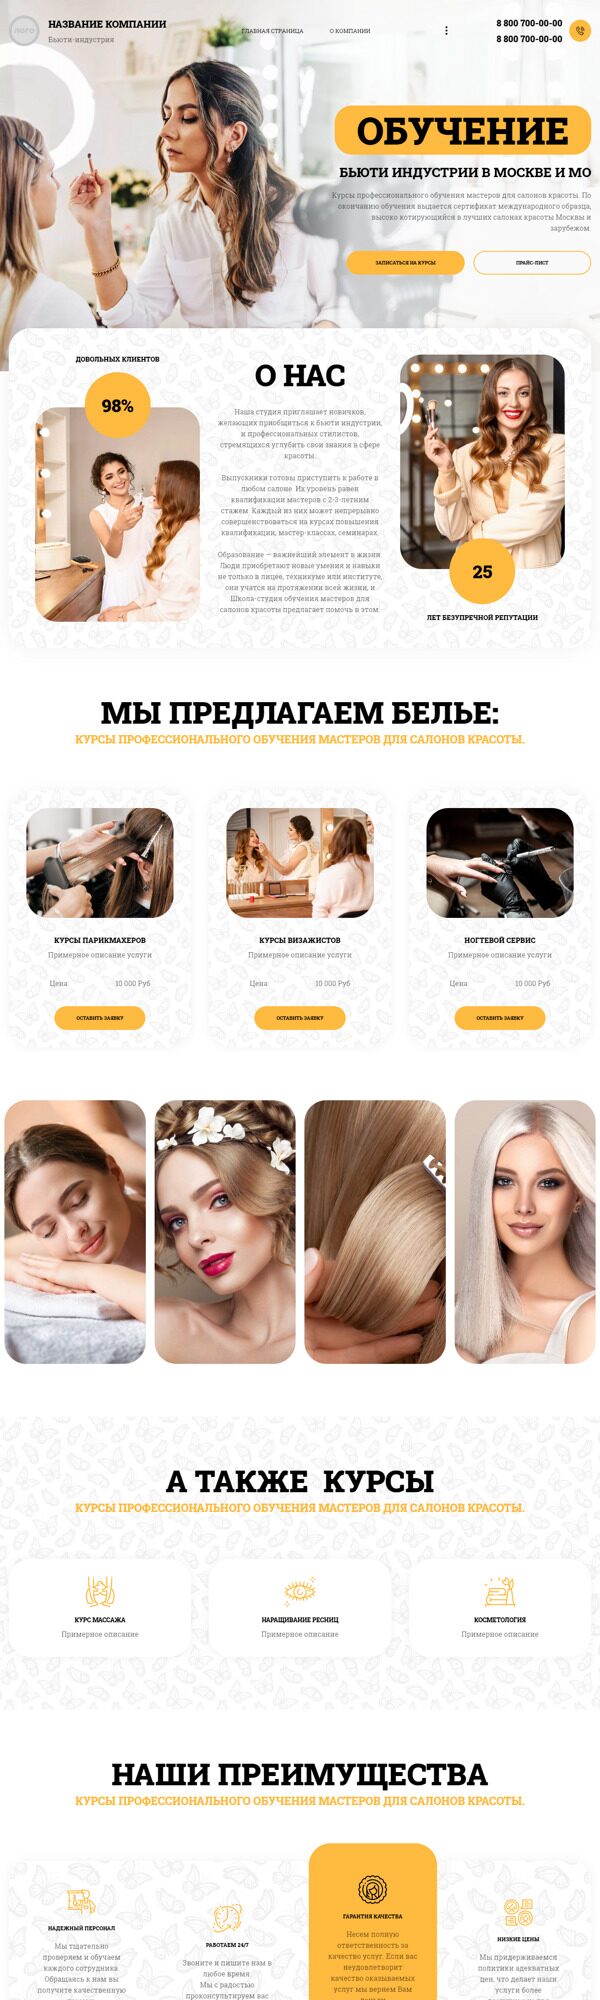 Готовый Сайт-Бизнес № 4759448 - Обучение мастеров для салонов красоты (Десктопная версия)